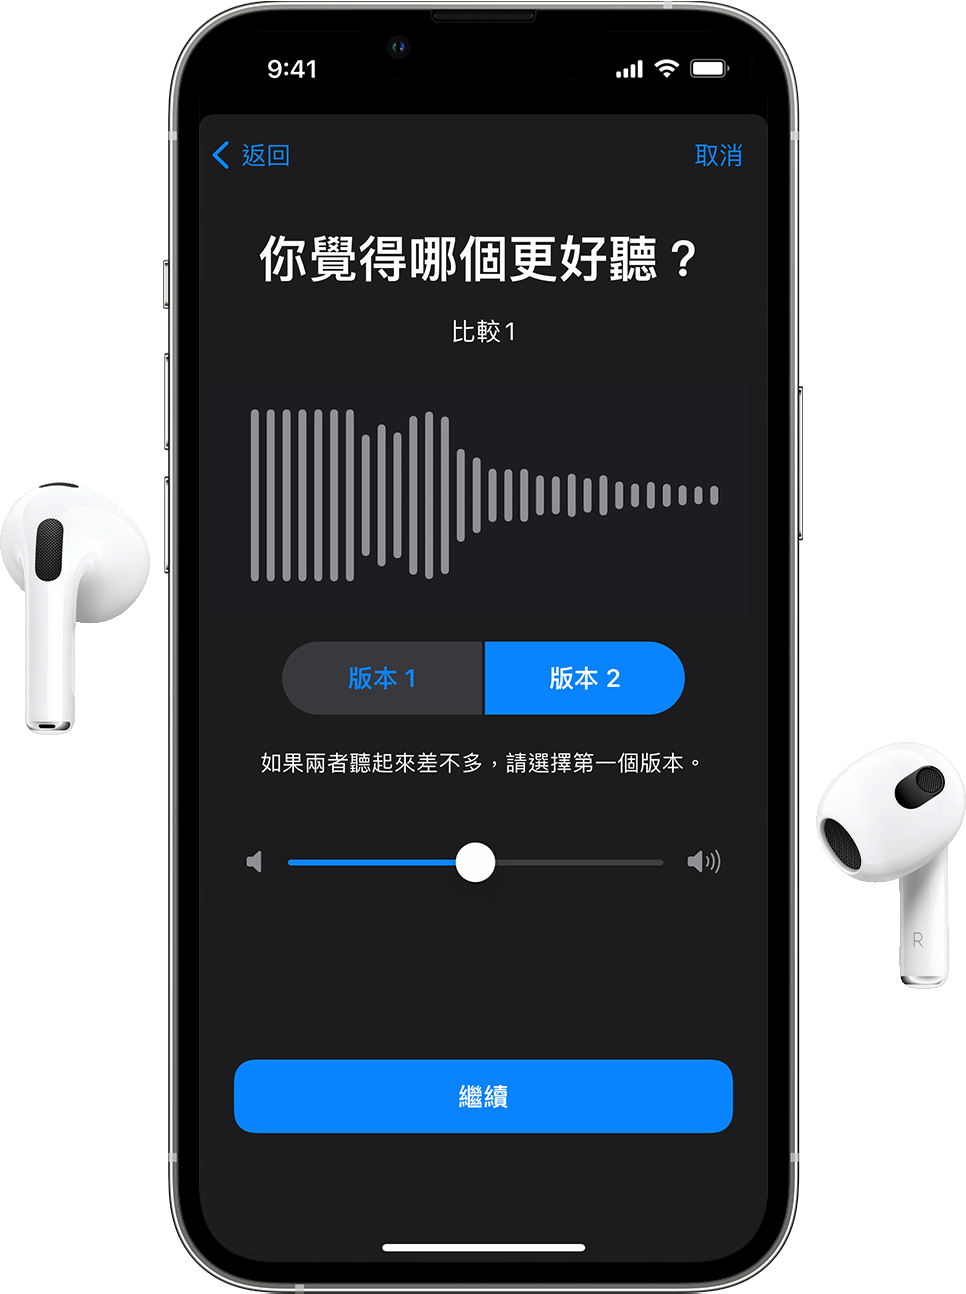 一對 AirPods，以及一部顯示「自訂音訊設定」的 iPhone，詢問哪個音訊樣本聽起來較適合你。